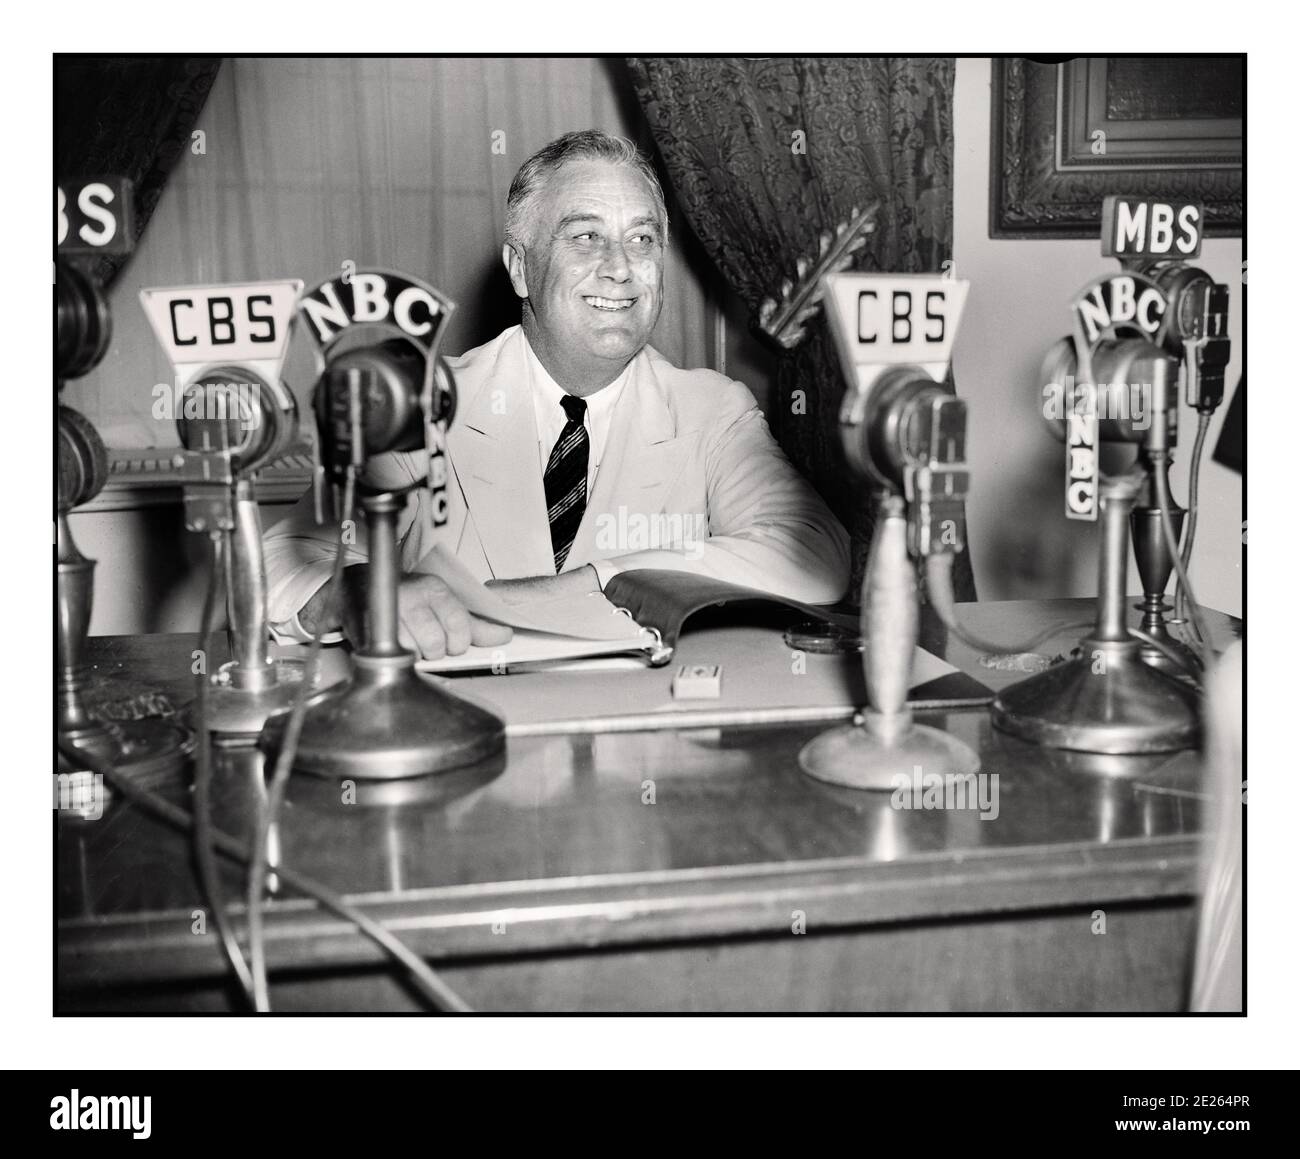 PRÄSIDENT ROOSEVELT 1930er FDR Franklin D. Roosevelt, der eine Radiosendung ("Kamingespräch") September 1934 gab. Auf seinem Schreibtisch CBS & NBC Netzwerk Broadcast Mikrofone. Franklin Delano Roosevelt Sr., oft mit seinen Initialen FDR bezeichnet, war ein amerikanischer Staatsmann und politischer Führer, der als 32. Präsident der Vereinigten Staaten von 1933 bis zu seinem Tod im Jahr 1945 diente. Stockfoto